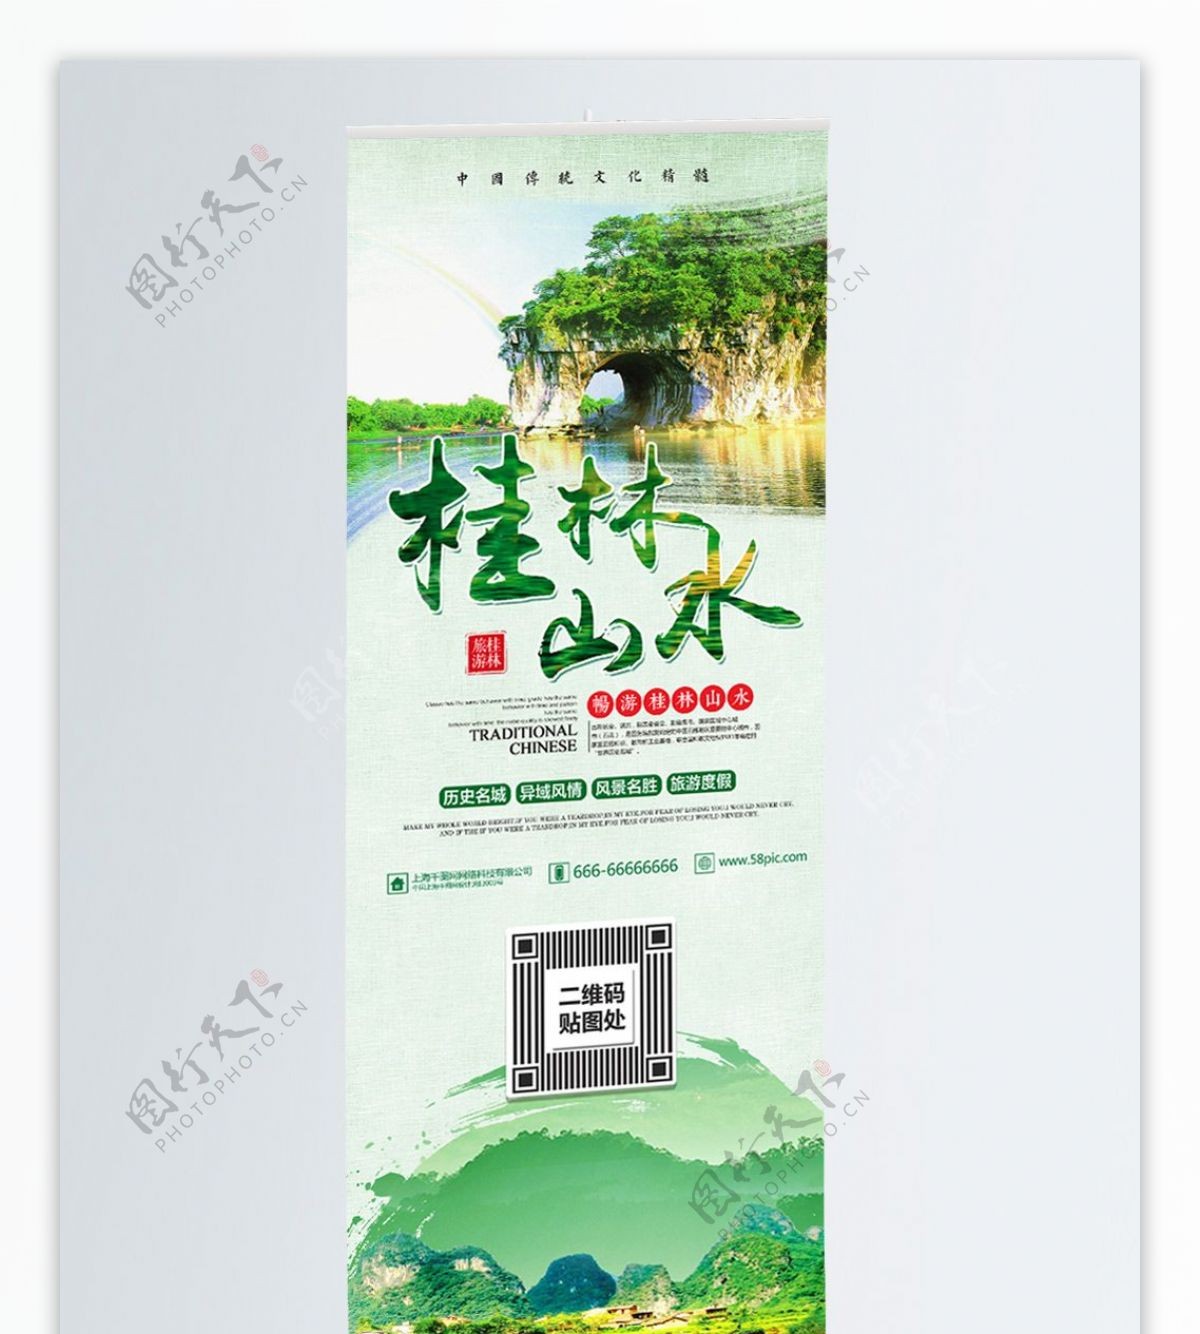 绿色清新国内游桂林山水宣传展架